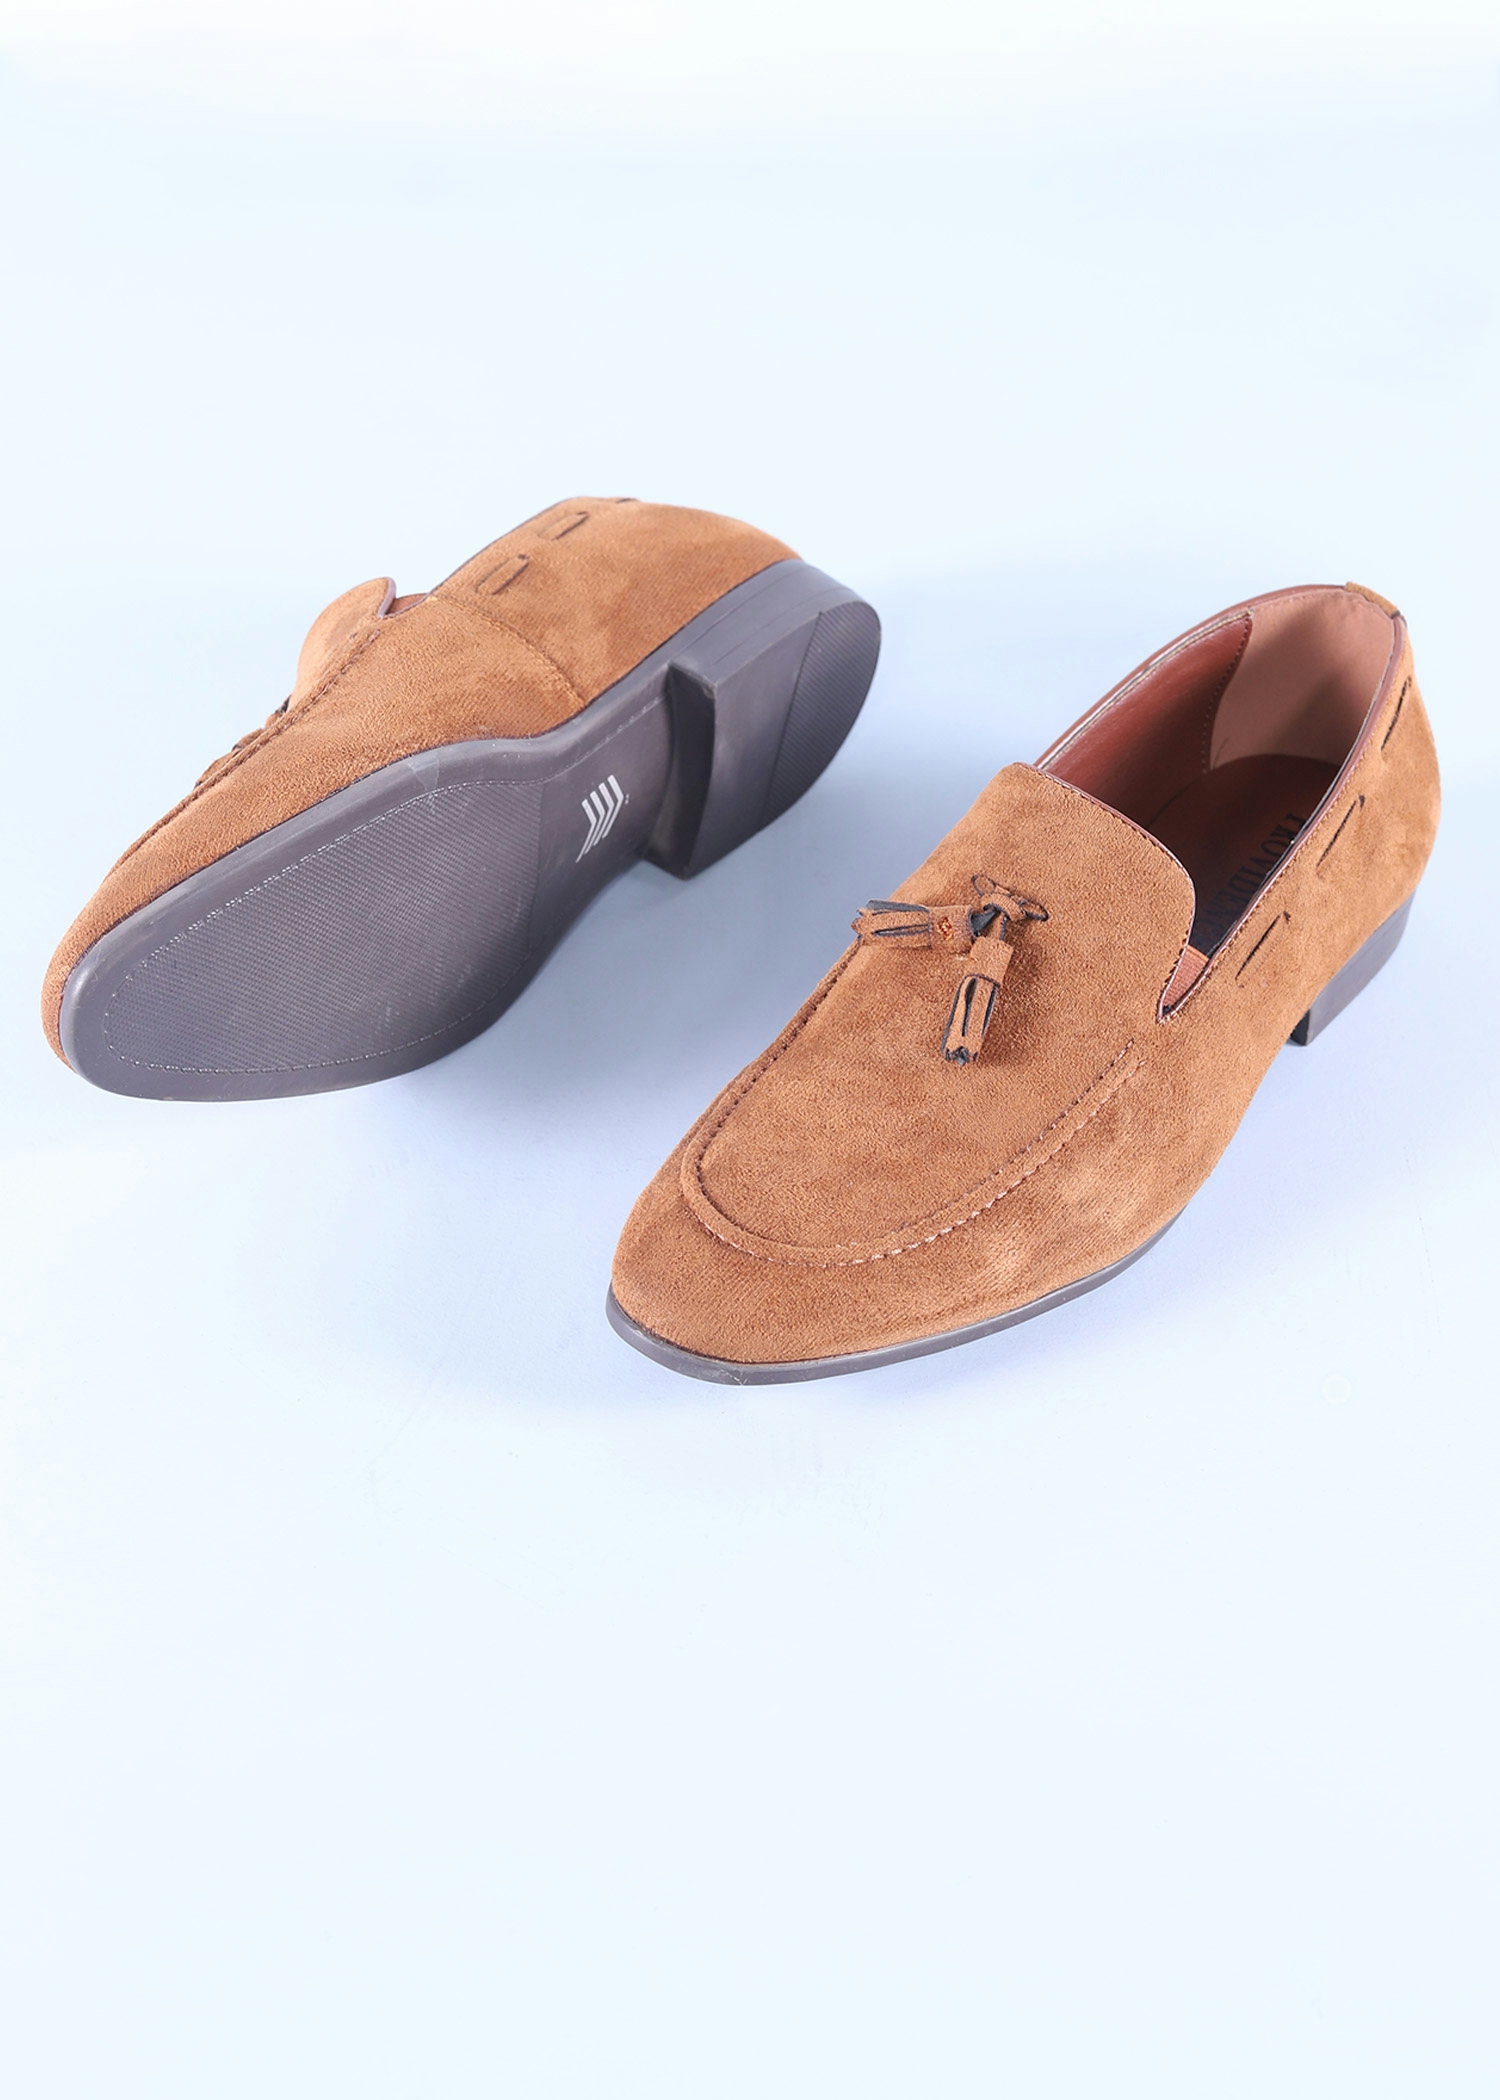 ebru mens shoes brown color sole